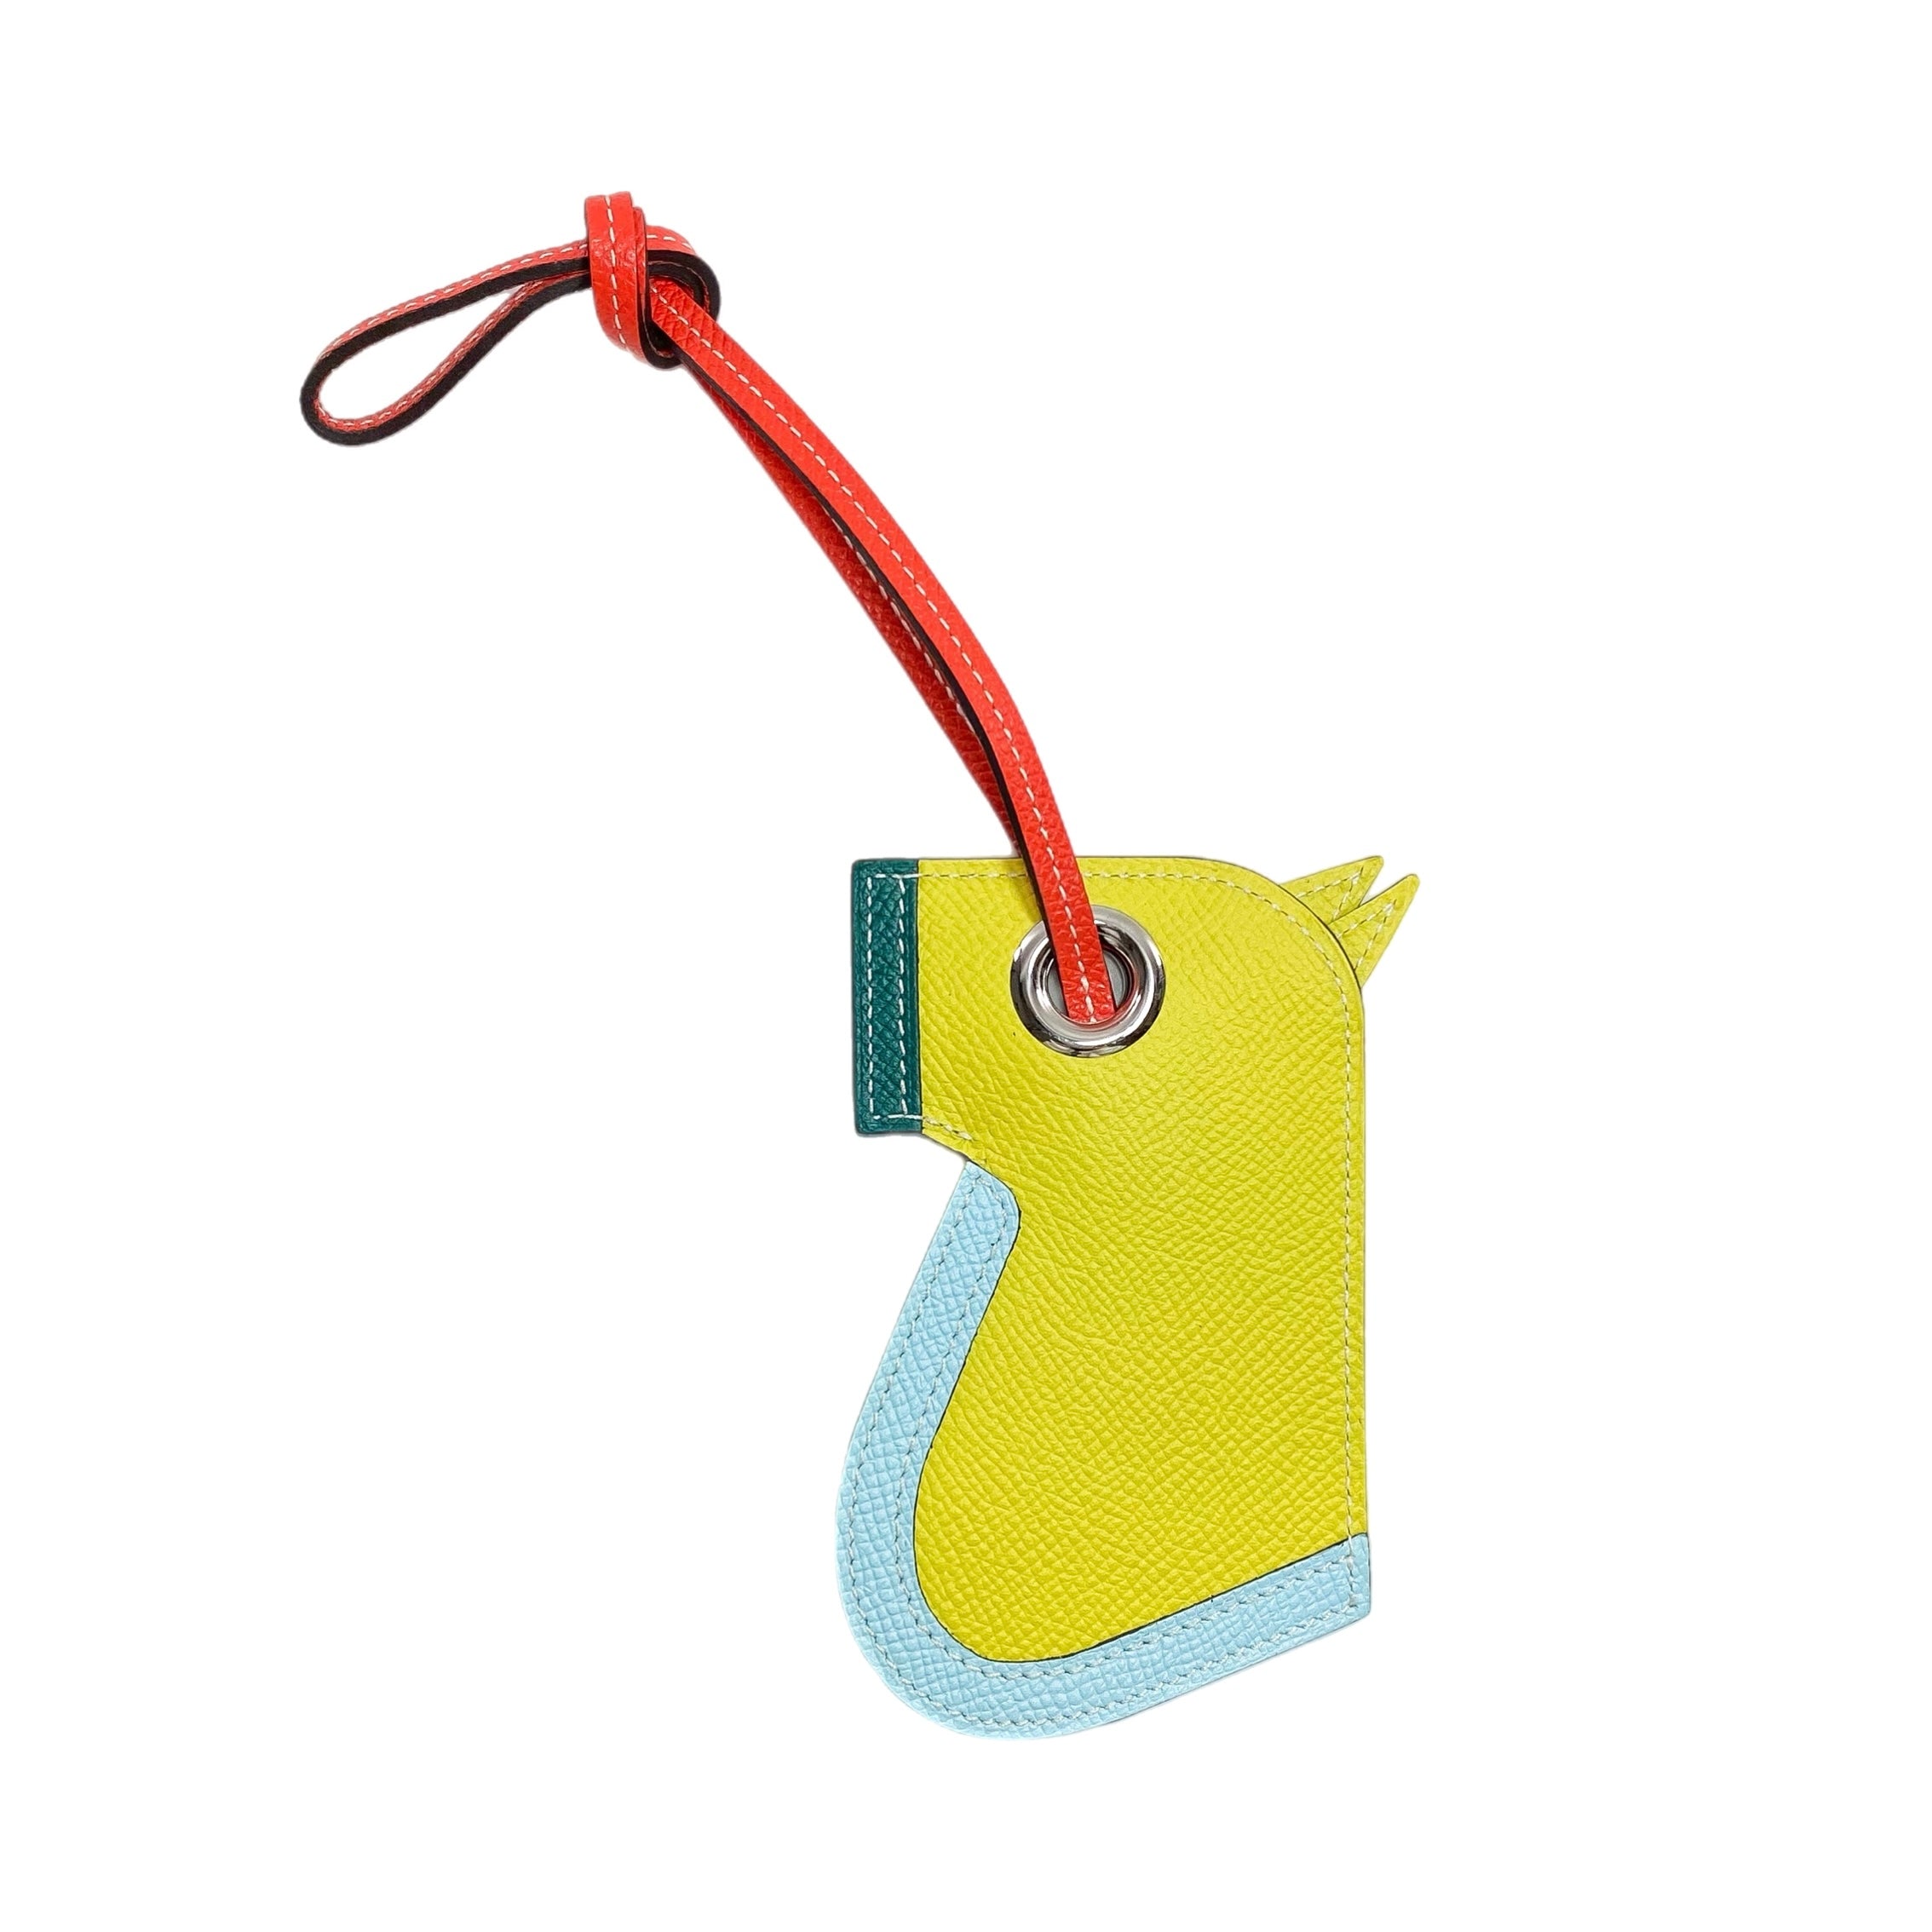 Hermes Camail Bag Charm/Key Holder